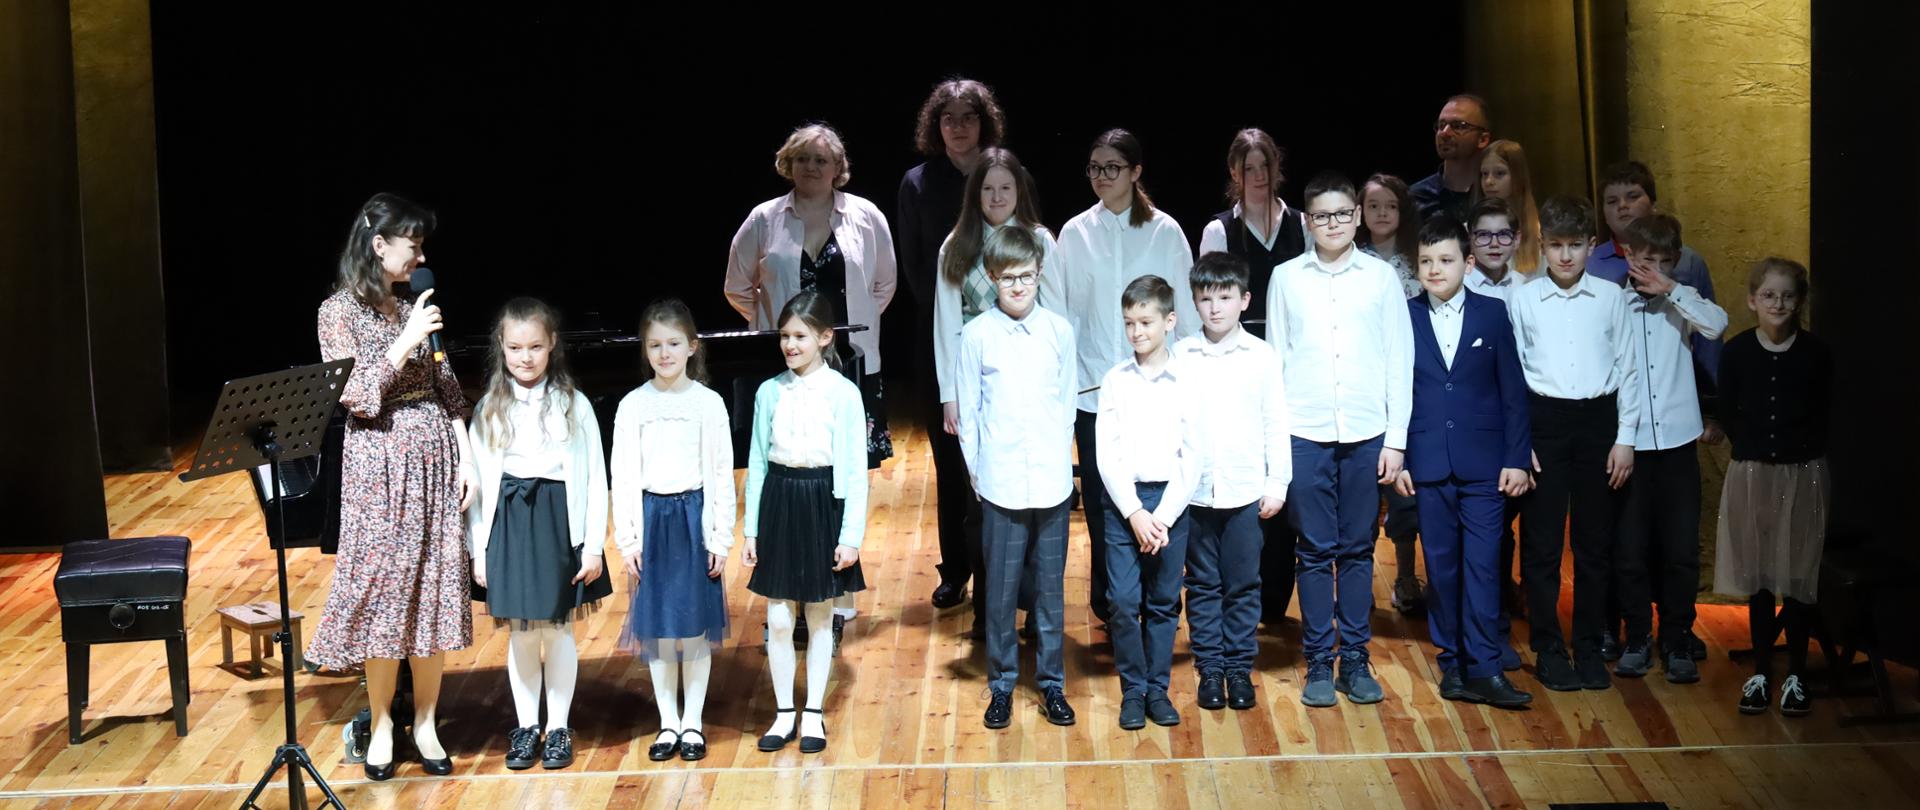 Fotografia wspólna wszystkich wykonawców koncertów dla uczniów szkół podstawowych. Ustawieni w rzędzie na scenie MOK w Głubczycach, przed oraz z prawej strony obok fortepianu.